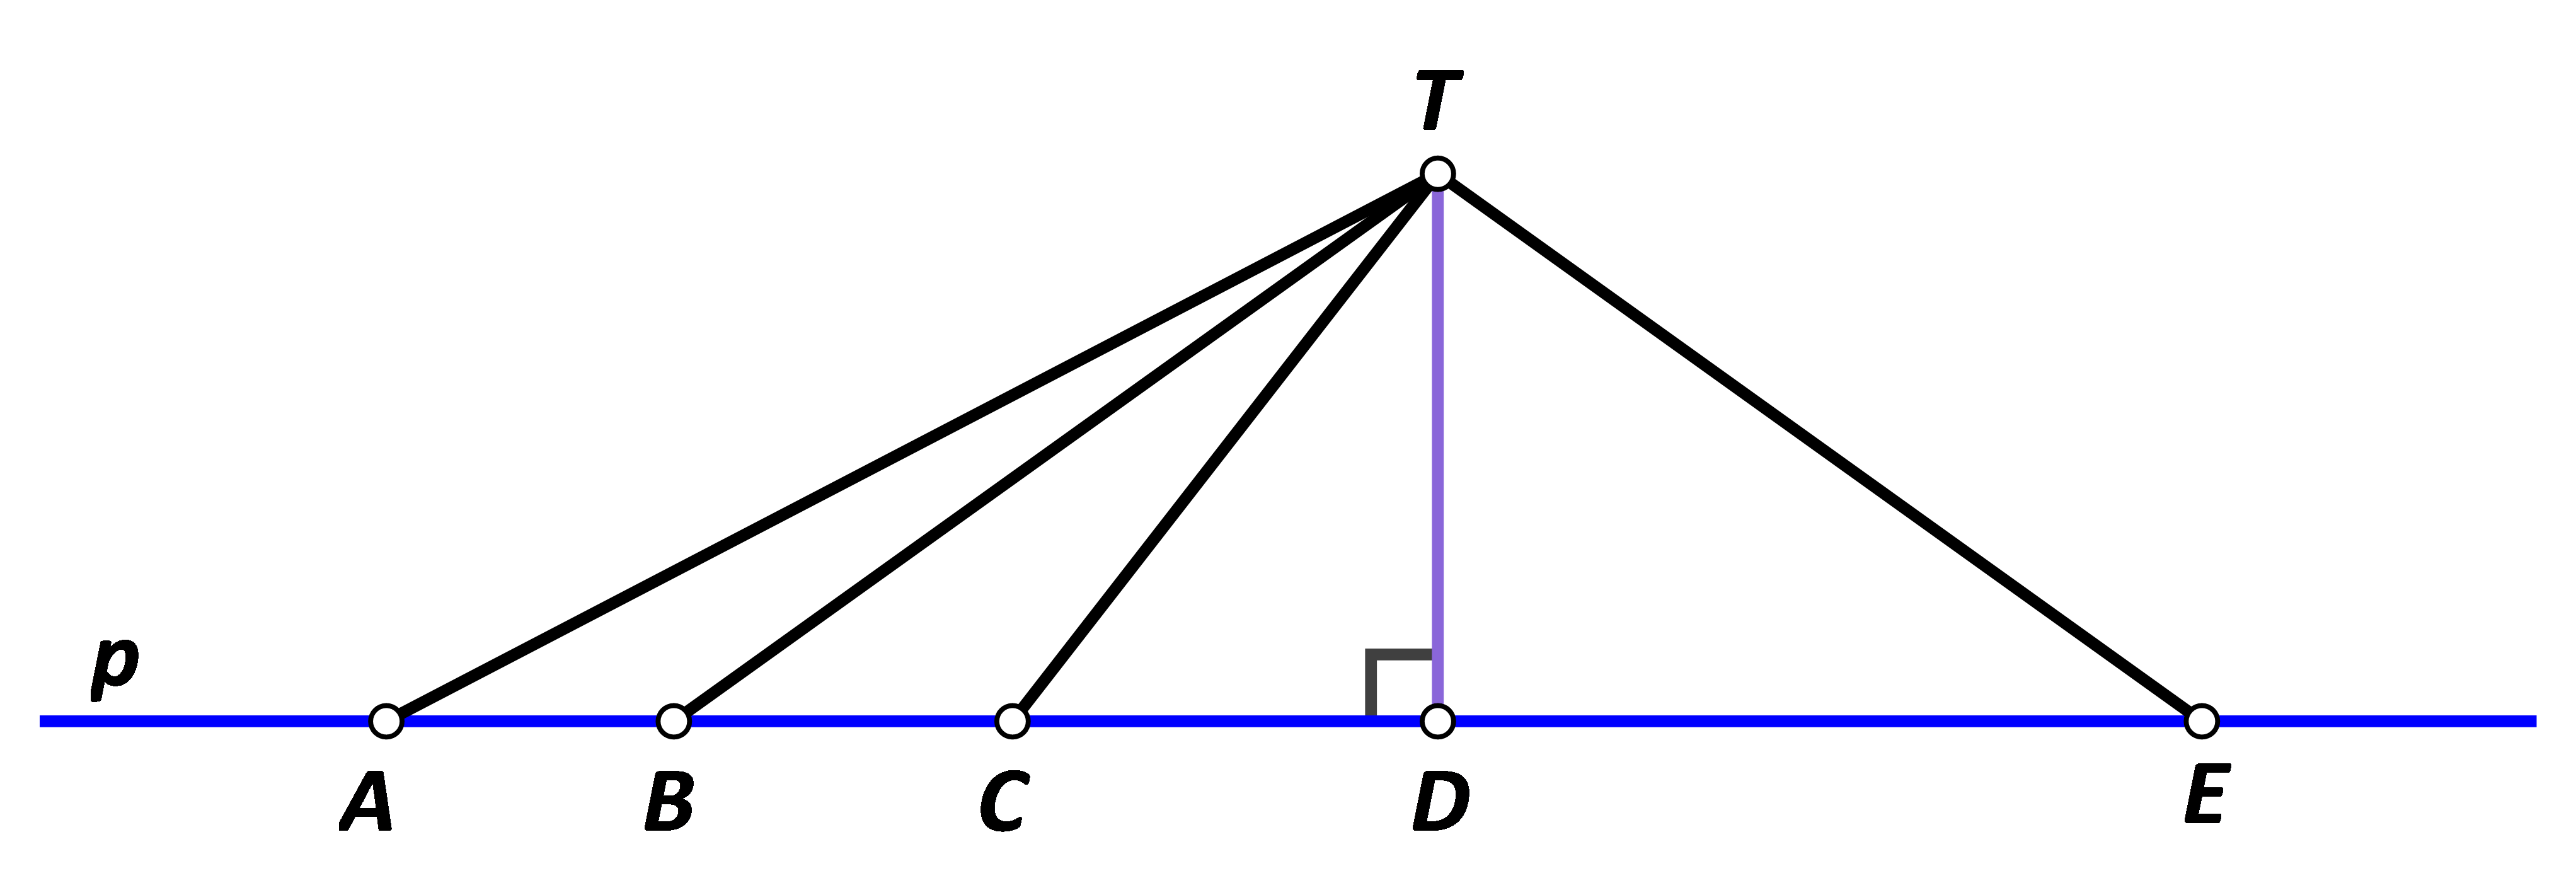 Na slici je pravac p, točke A, B, C, D i E koje pripadaju pravcu p i točka T koja mu ne pripada.